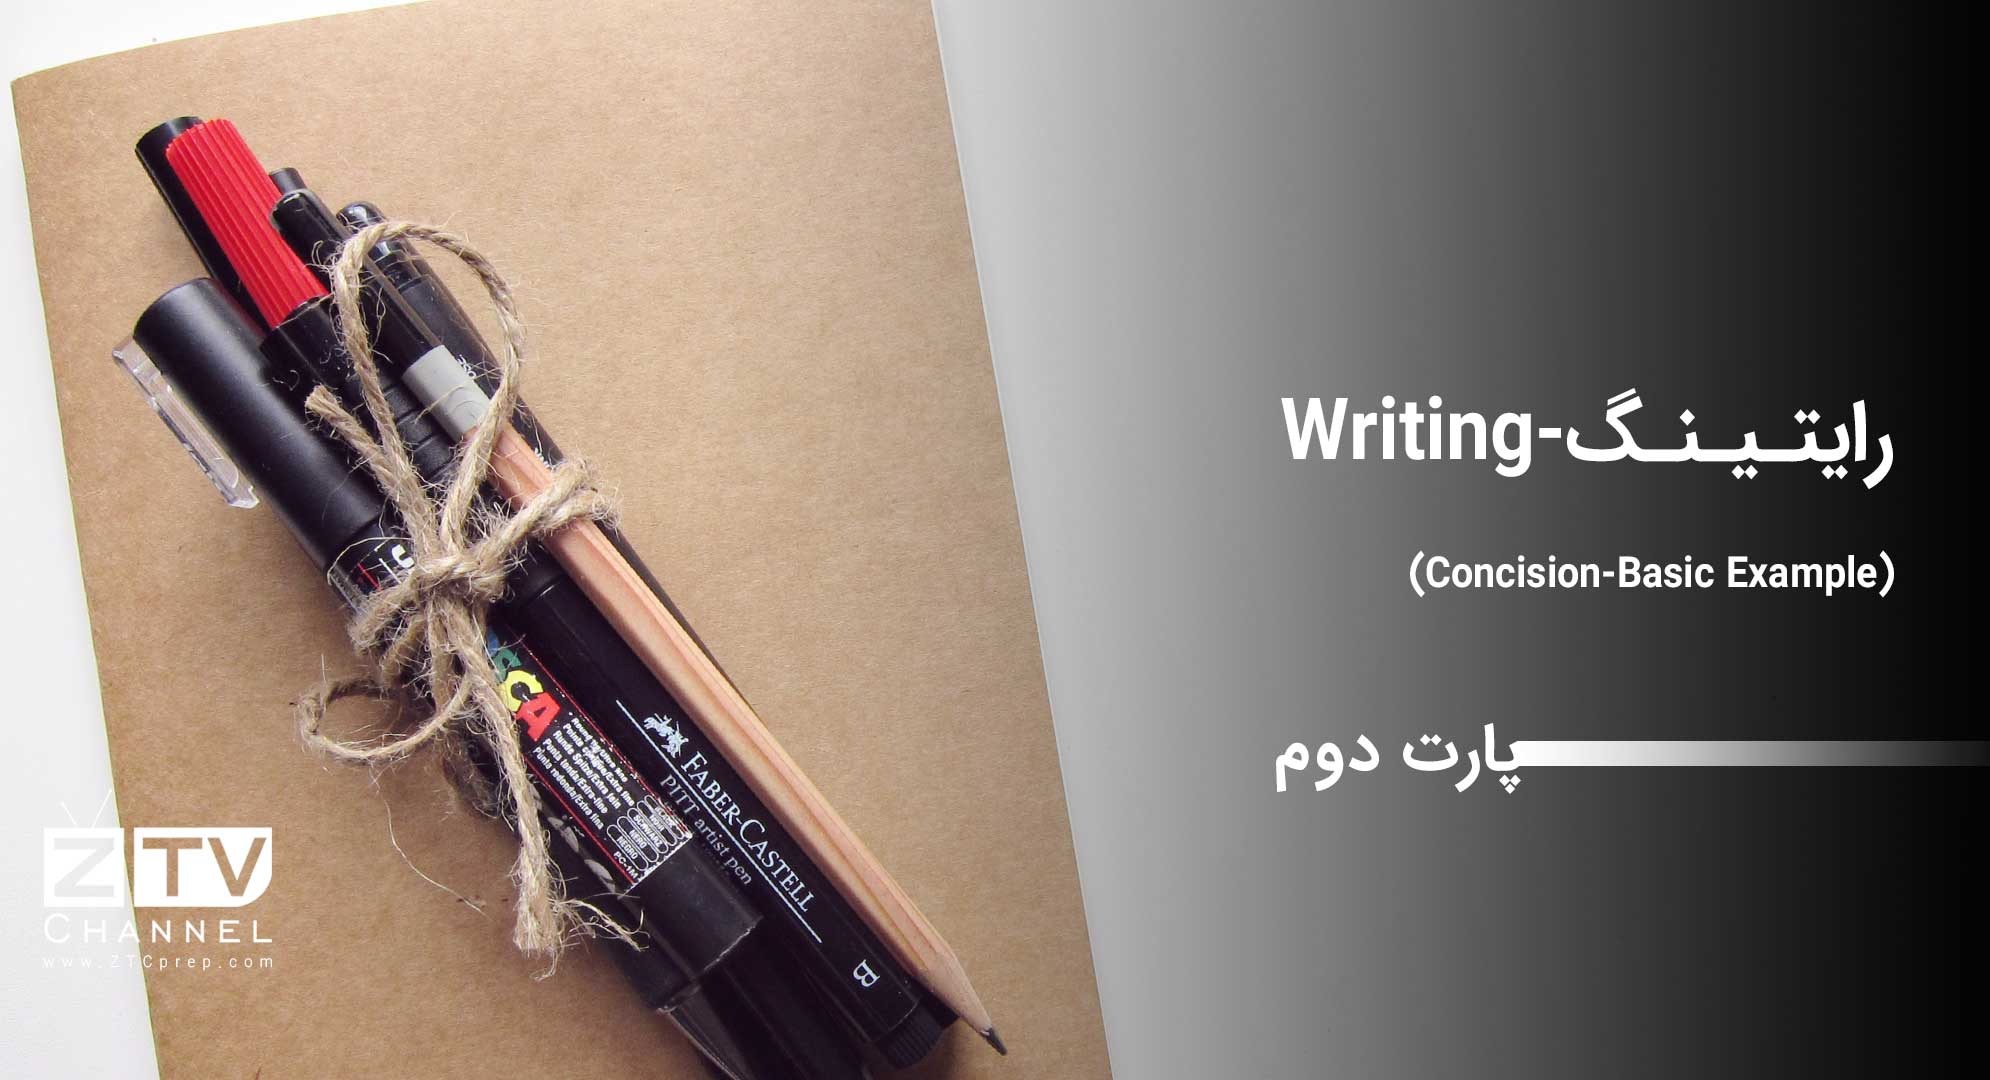 رایتینگ - (Writing (Concision-Basic Example – پارت دوم